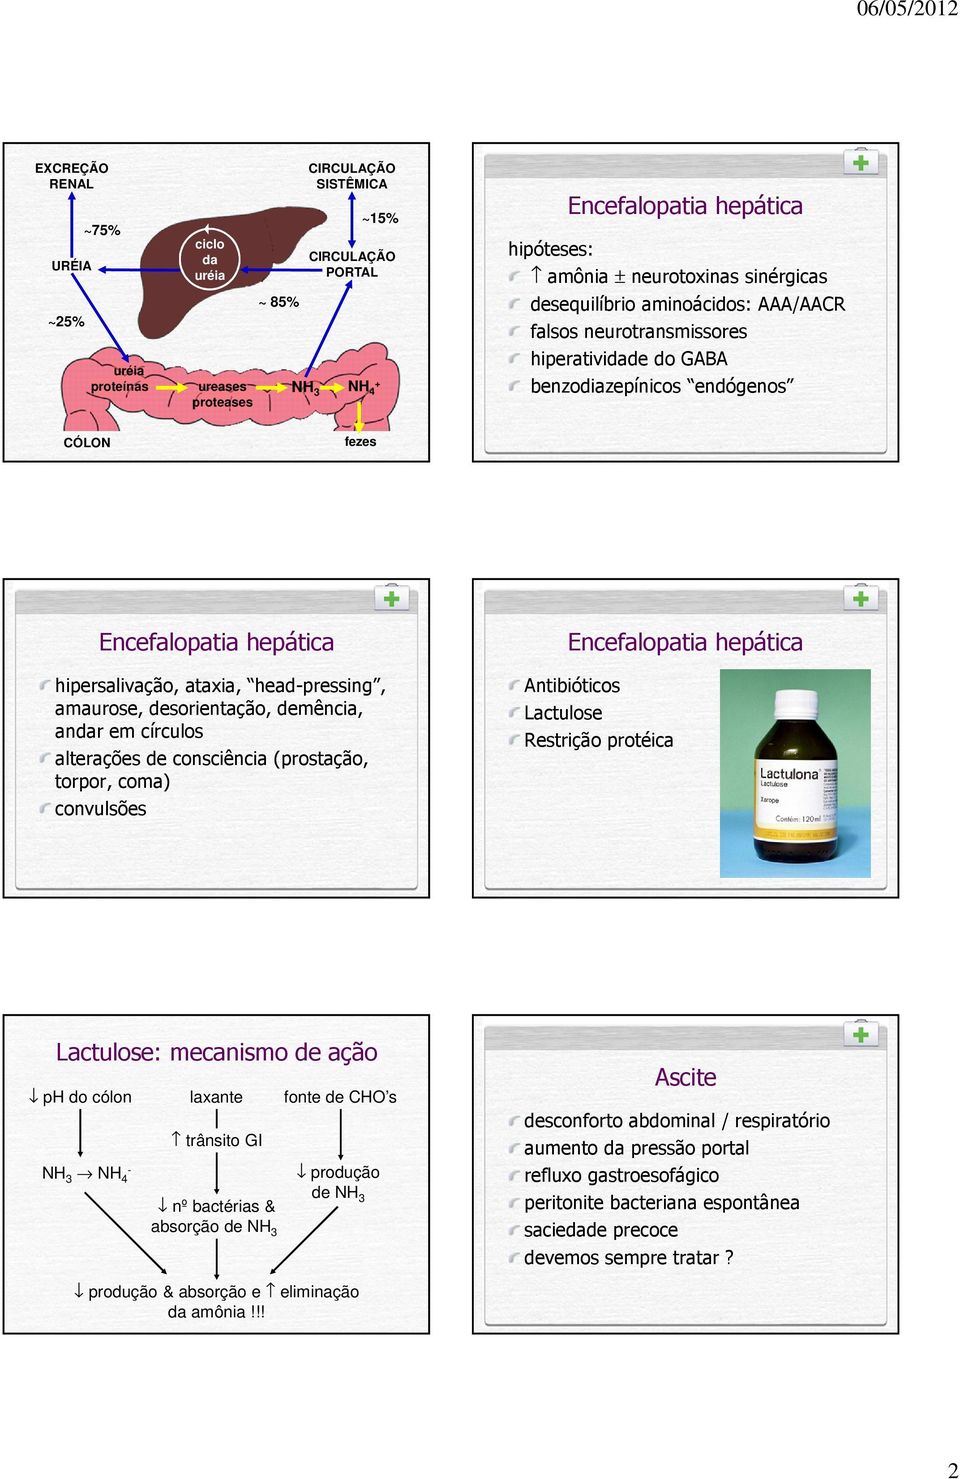 círculos alterações de consciência (prostação, torpor, coma) convulsões Antibióticos Lactulose Restrição protéica Lactulose: mecanismo de ação ph do cólon laxante fonte de CHO s NH 3 NH 4 - trânsito